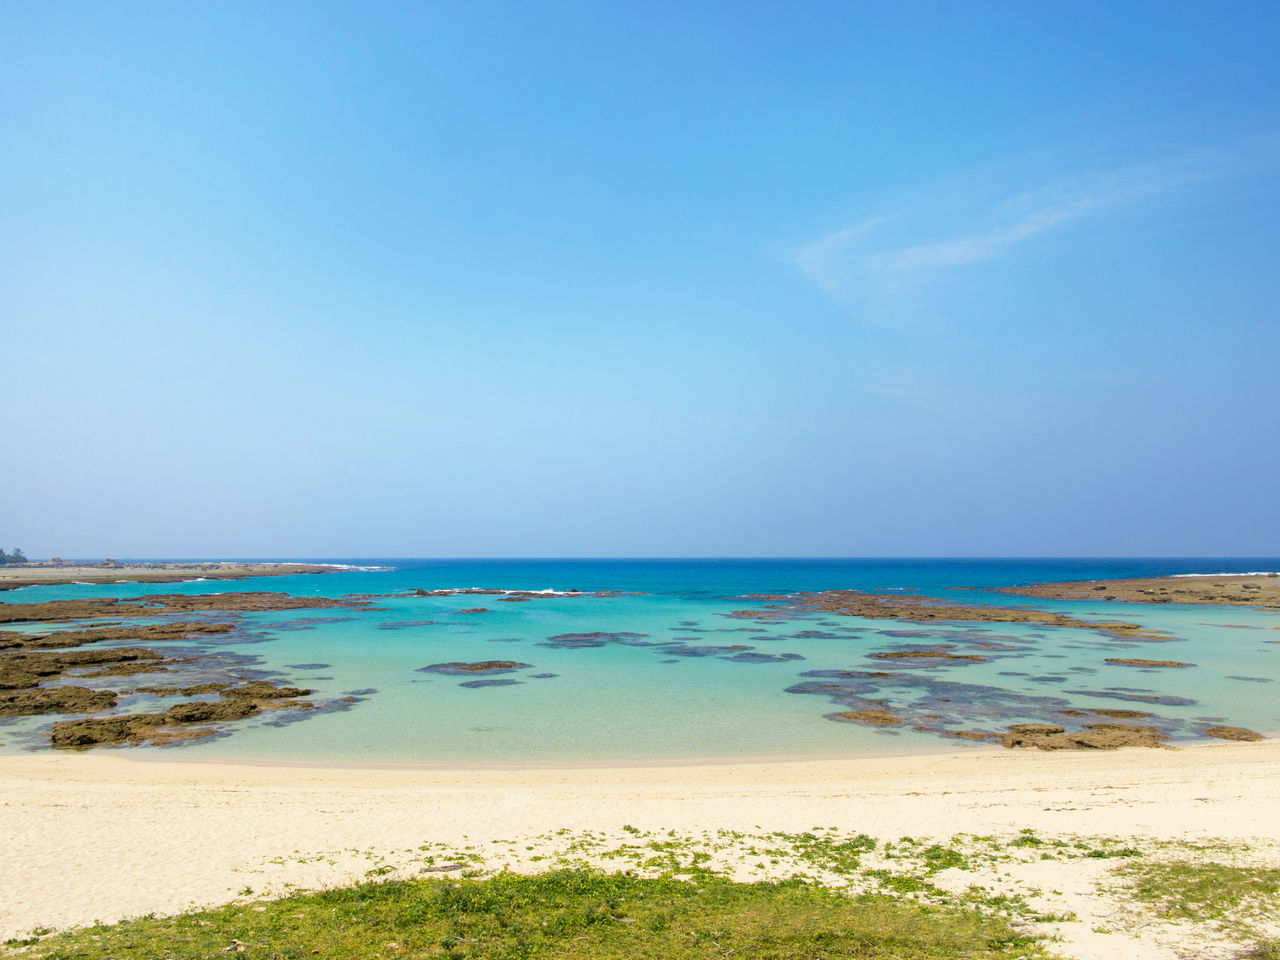 شاطئ توموري ويعرف أيضا باسم ’’الملاك الأزرق‘‘ بسبب جمال مياهه.